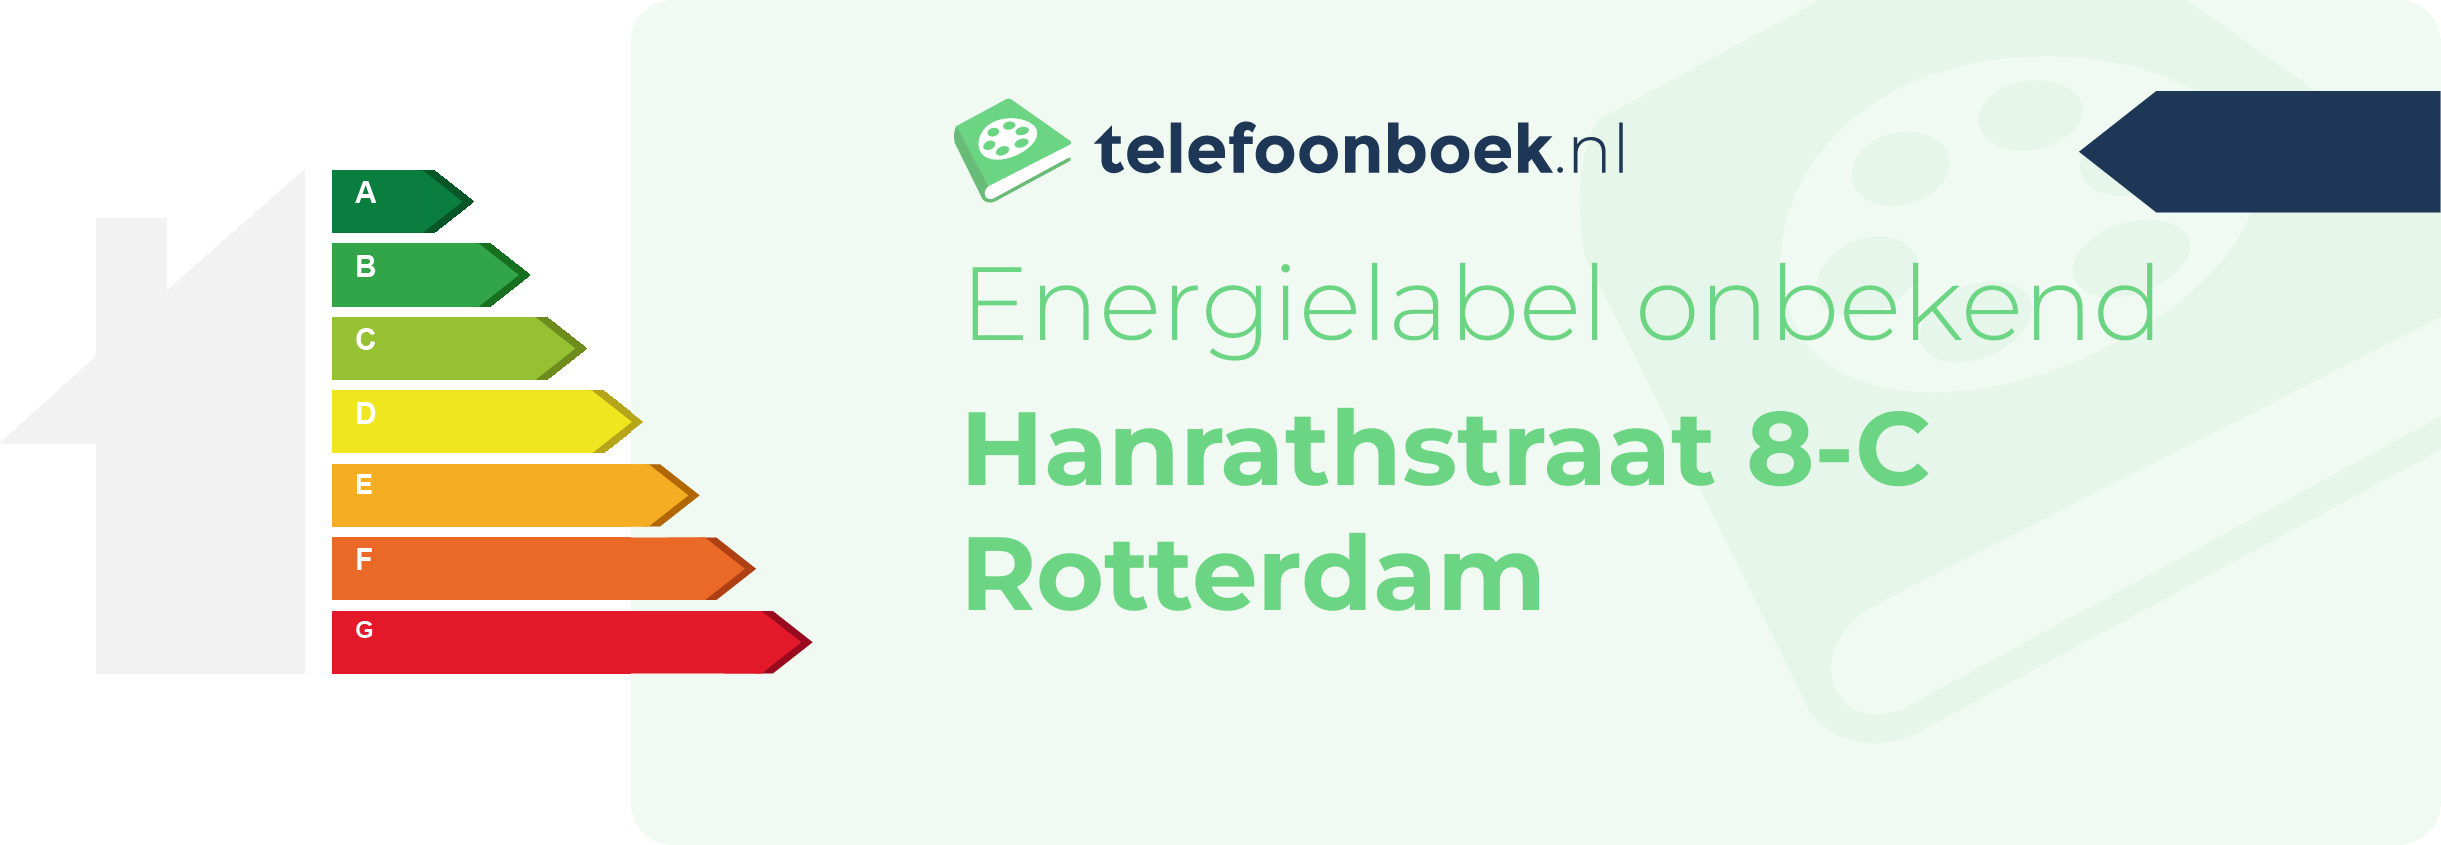 Energielabel Hanrathstraat 8-C Rotterdam